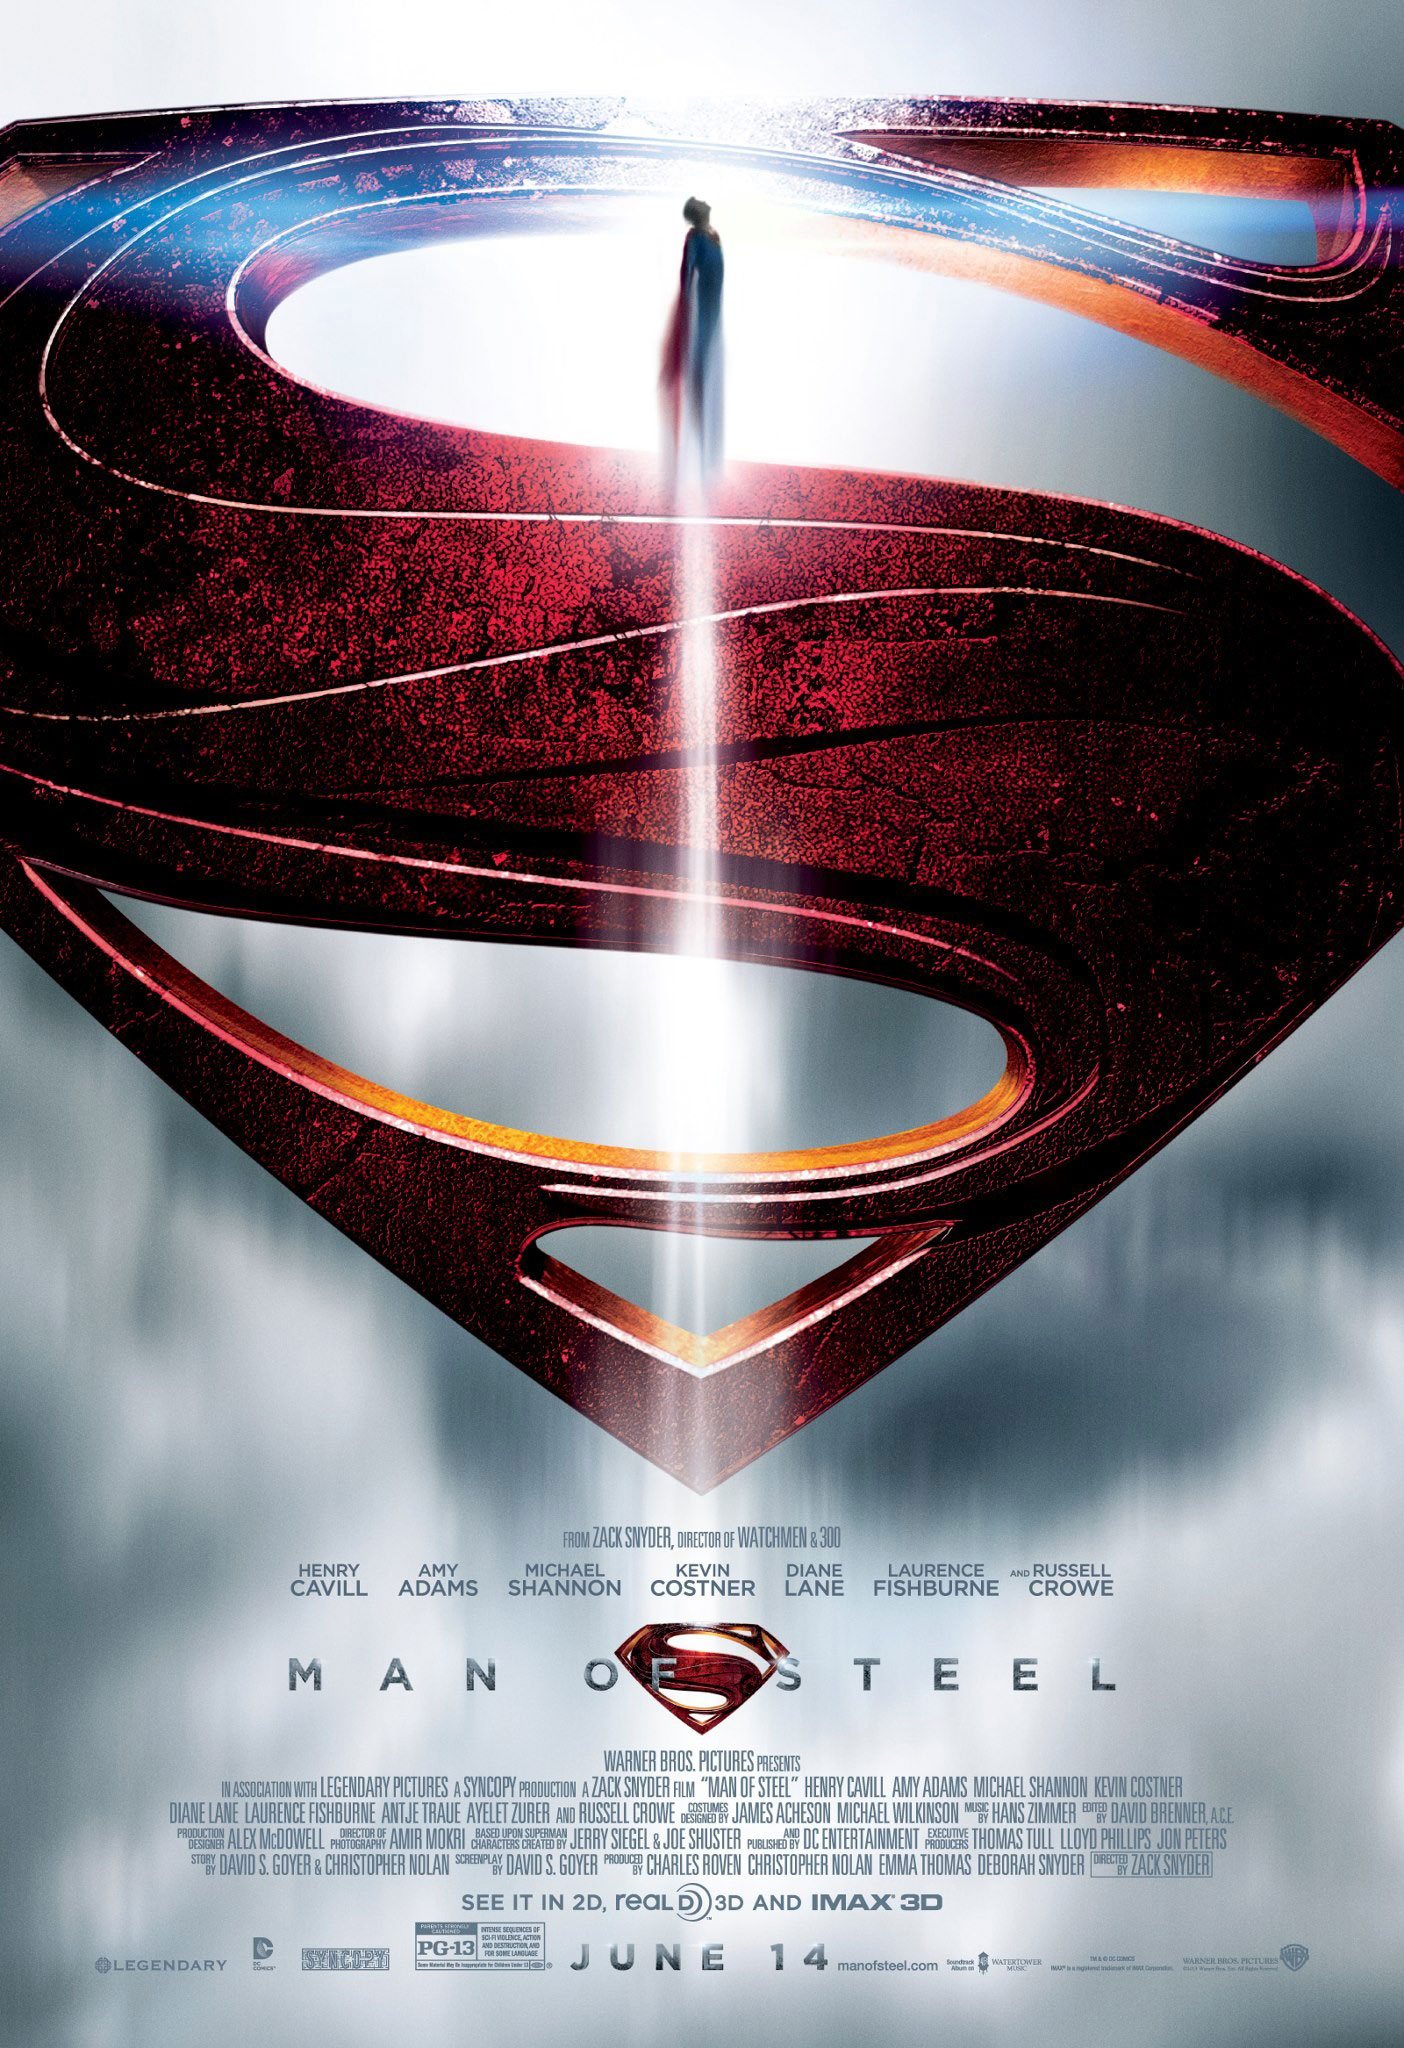 Amy Adams lands Lois Lane role in 'Superman: Man Of Steel